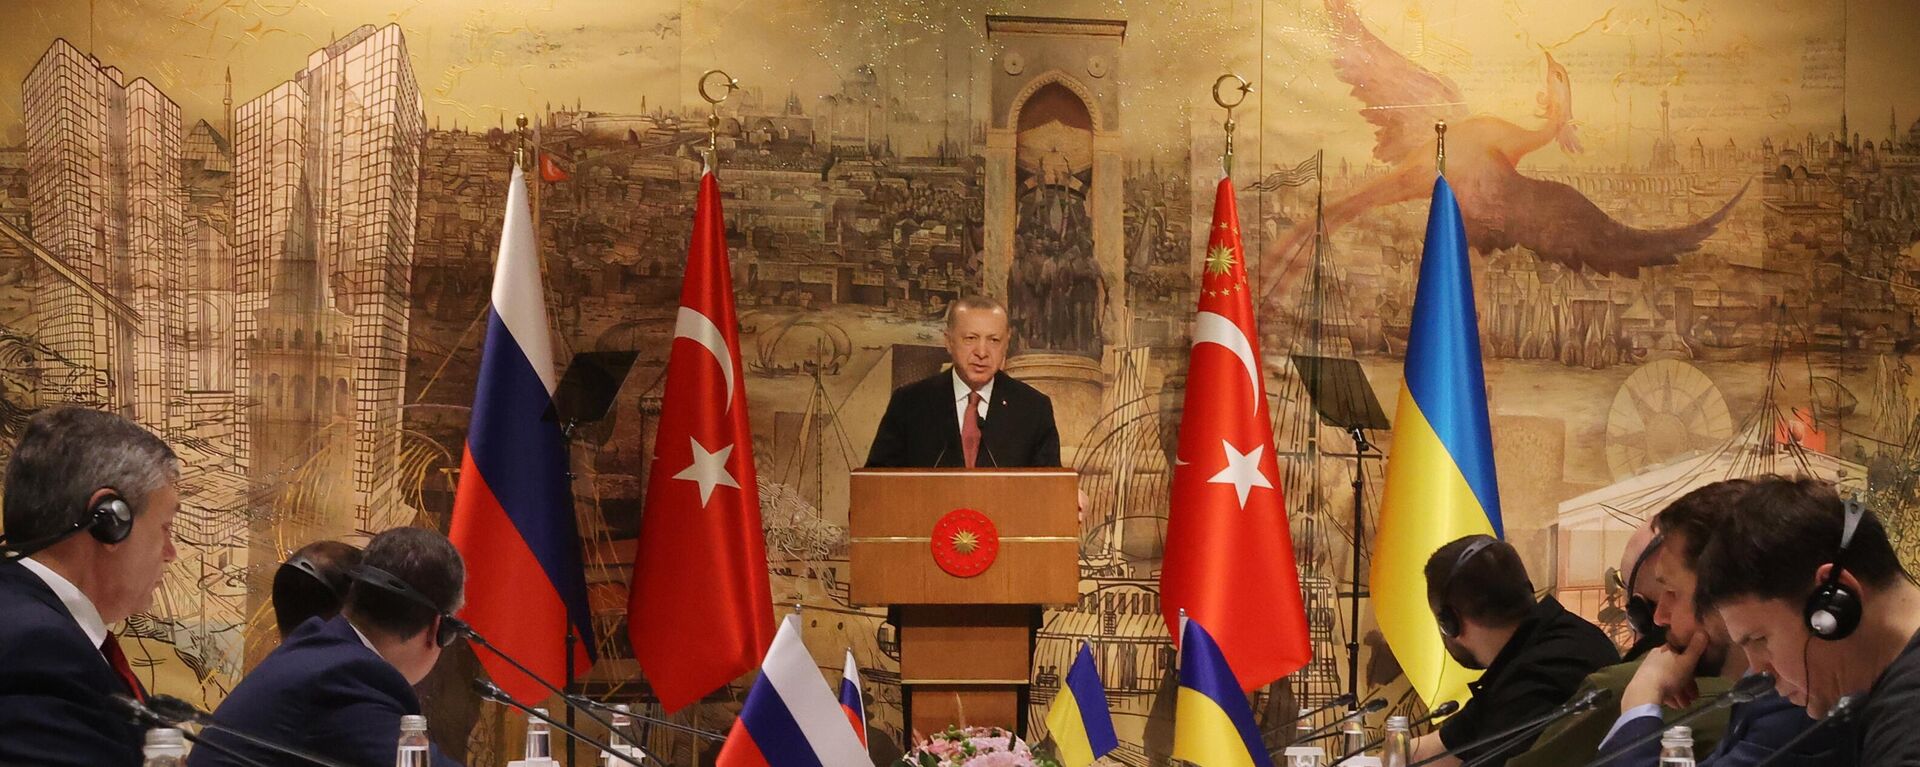 Tổng thống Thổ Nhĩ Kỳ Recep Tayyip Erdogan phát biểu trong cuộc hội đàm Nga-Ukraina tại Cung điện Dolmabahce ở Istanbul. - Sputnik Việt Nam, 1920, 29.03.2022